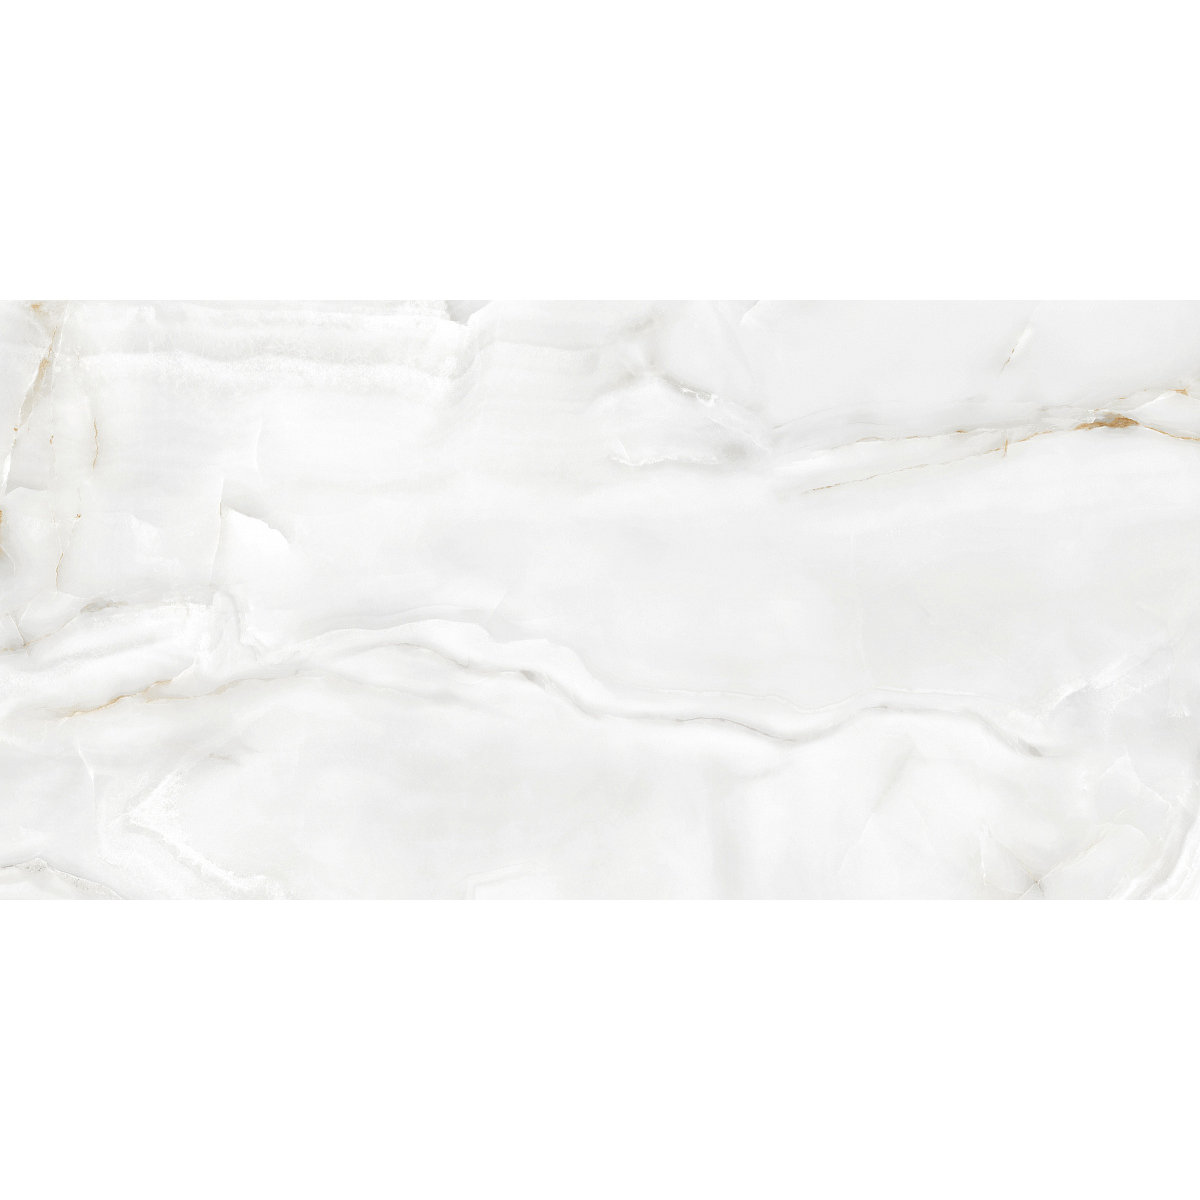 Плитка Ecoceramic Eternal White 017 Mt 60x120 см плитка ecoceramic eternal calacatta white 004 pl 60x120 см